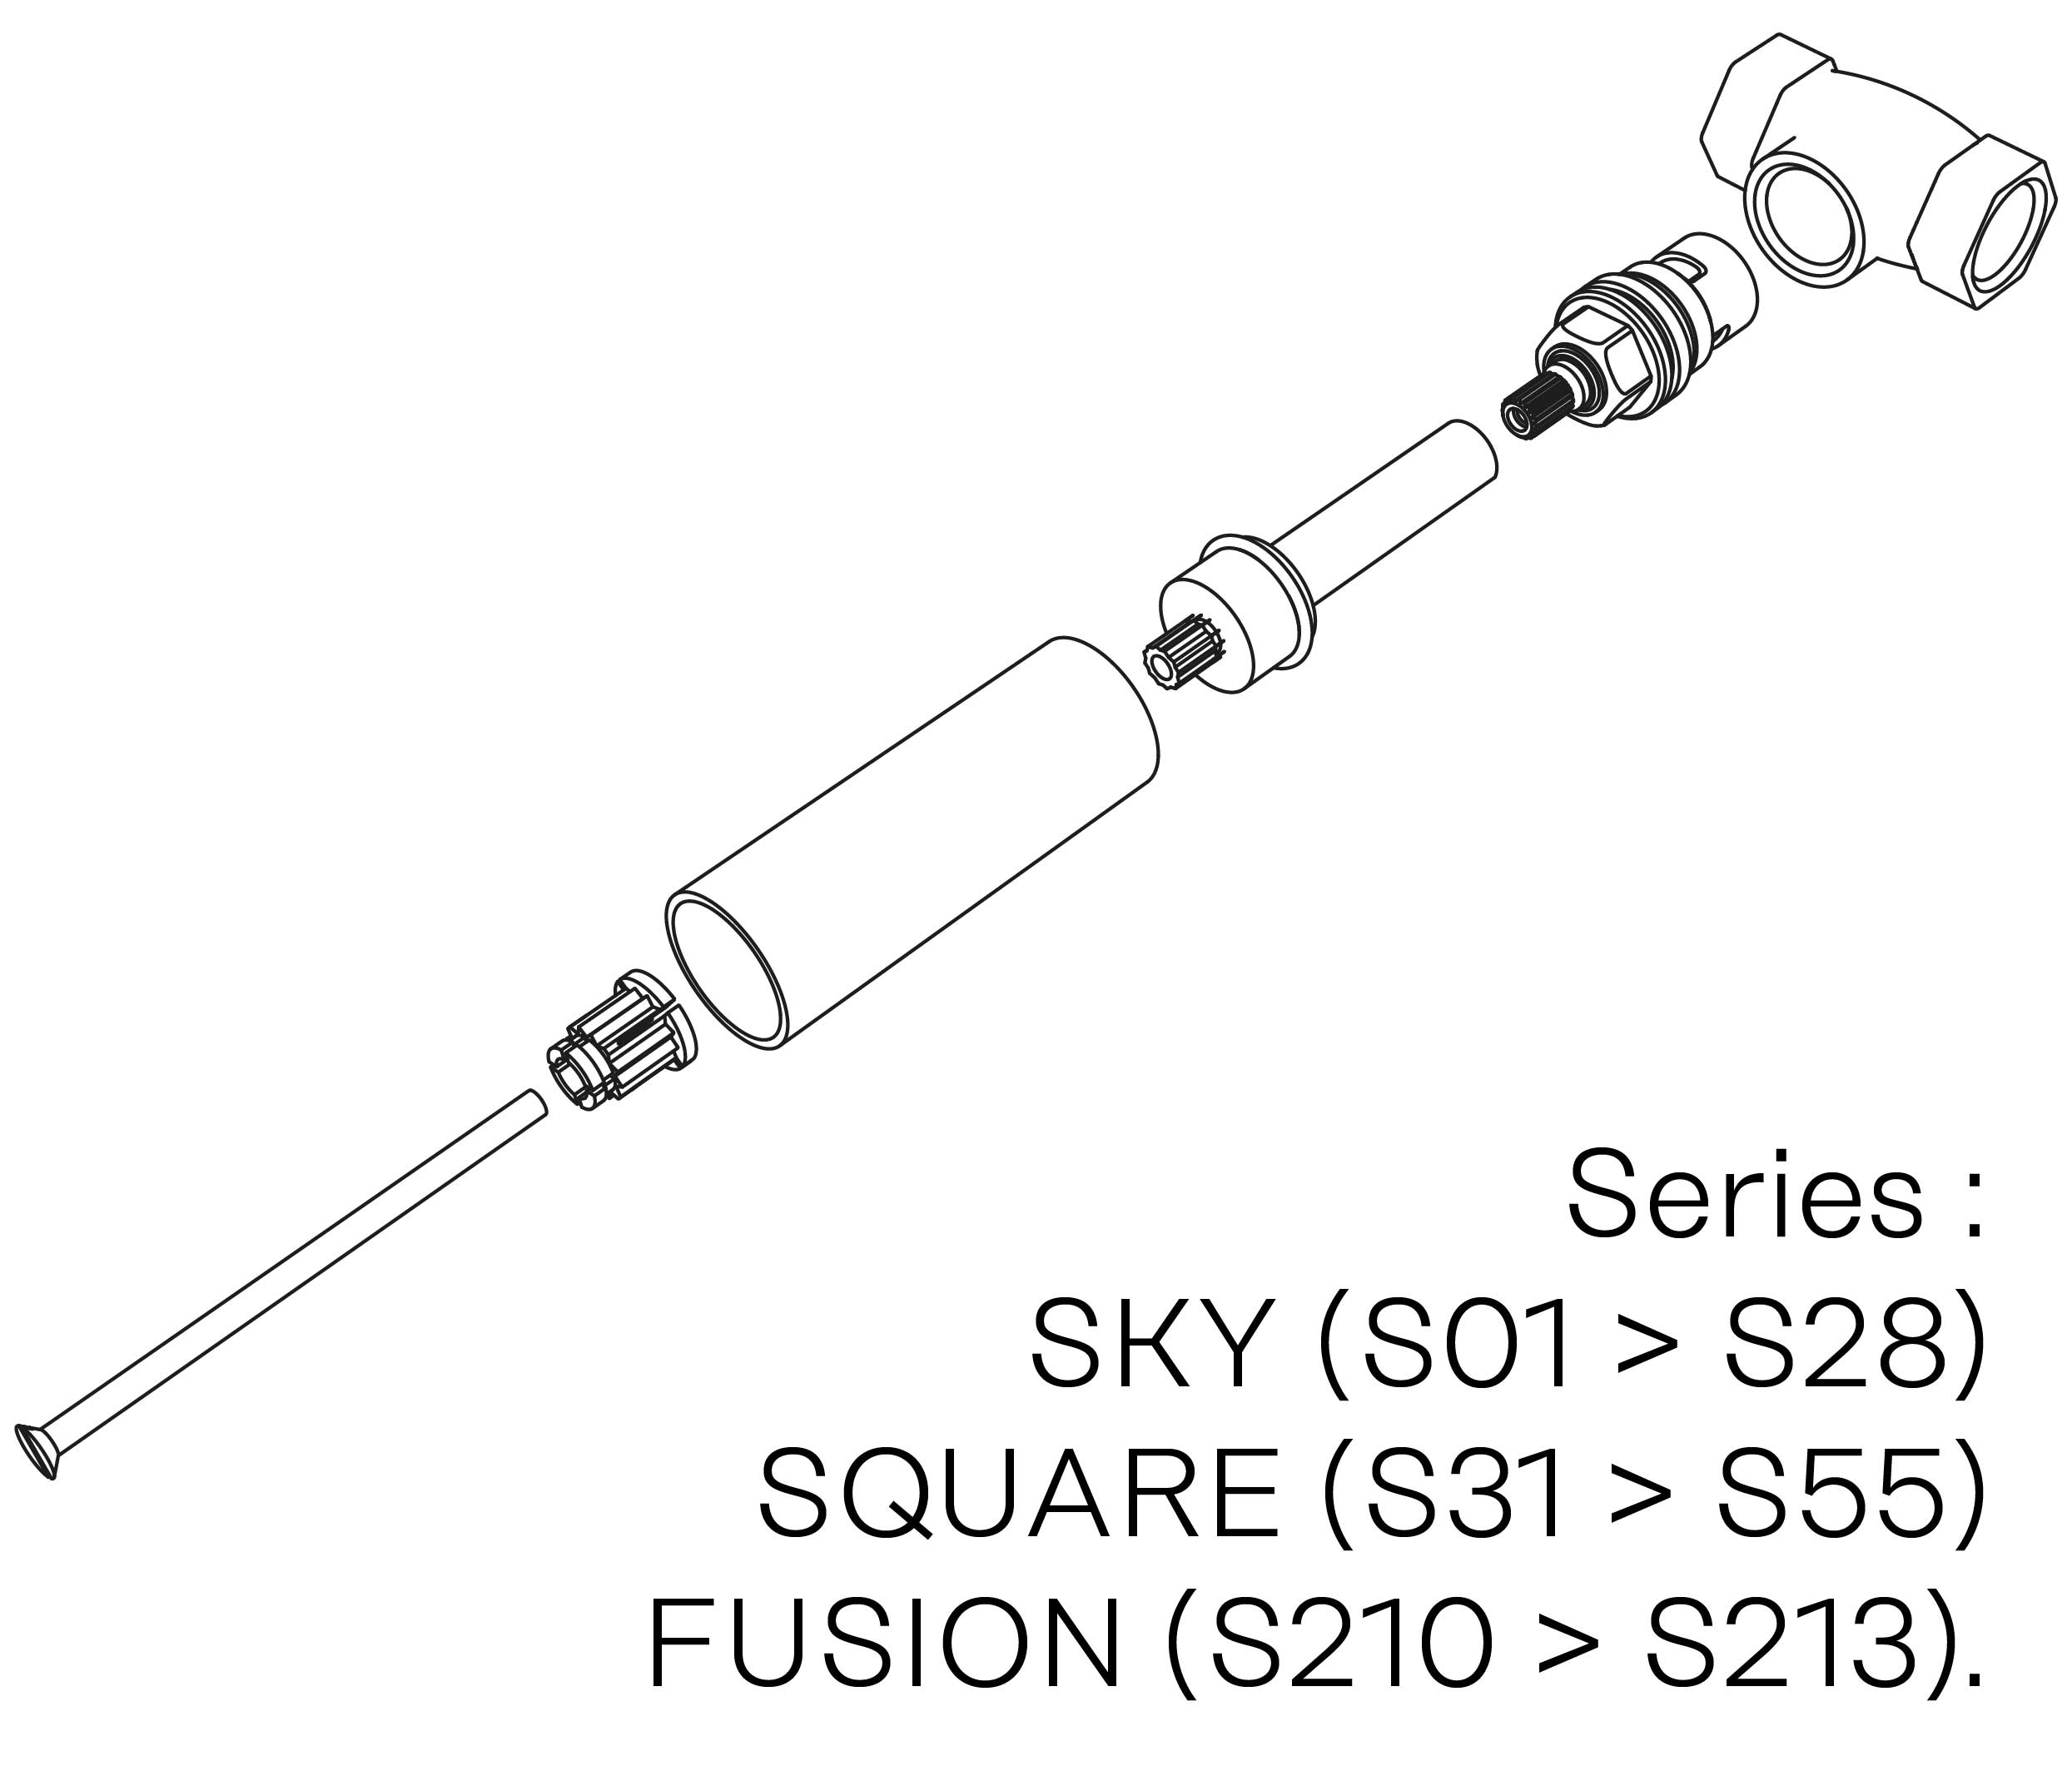 S00-25K28C Kit #5 for W-M valve 1/2″, 1/4 turn, Right